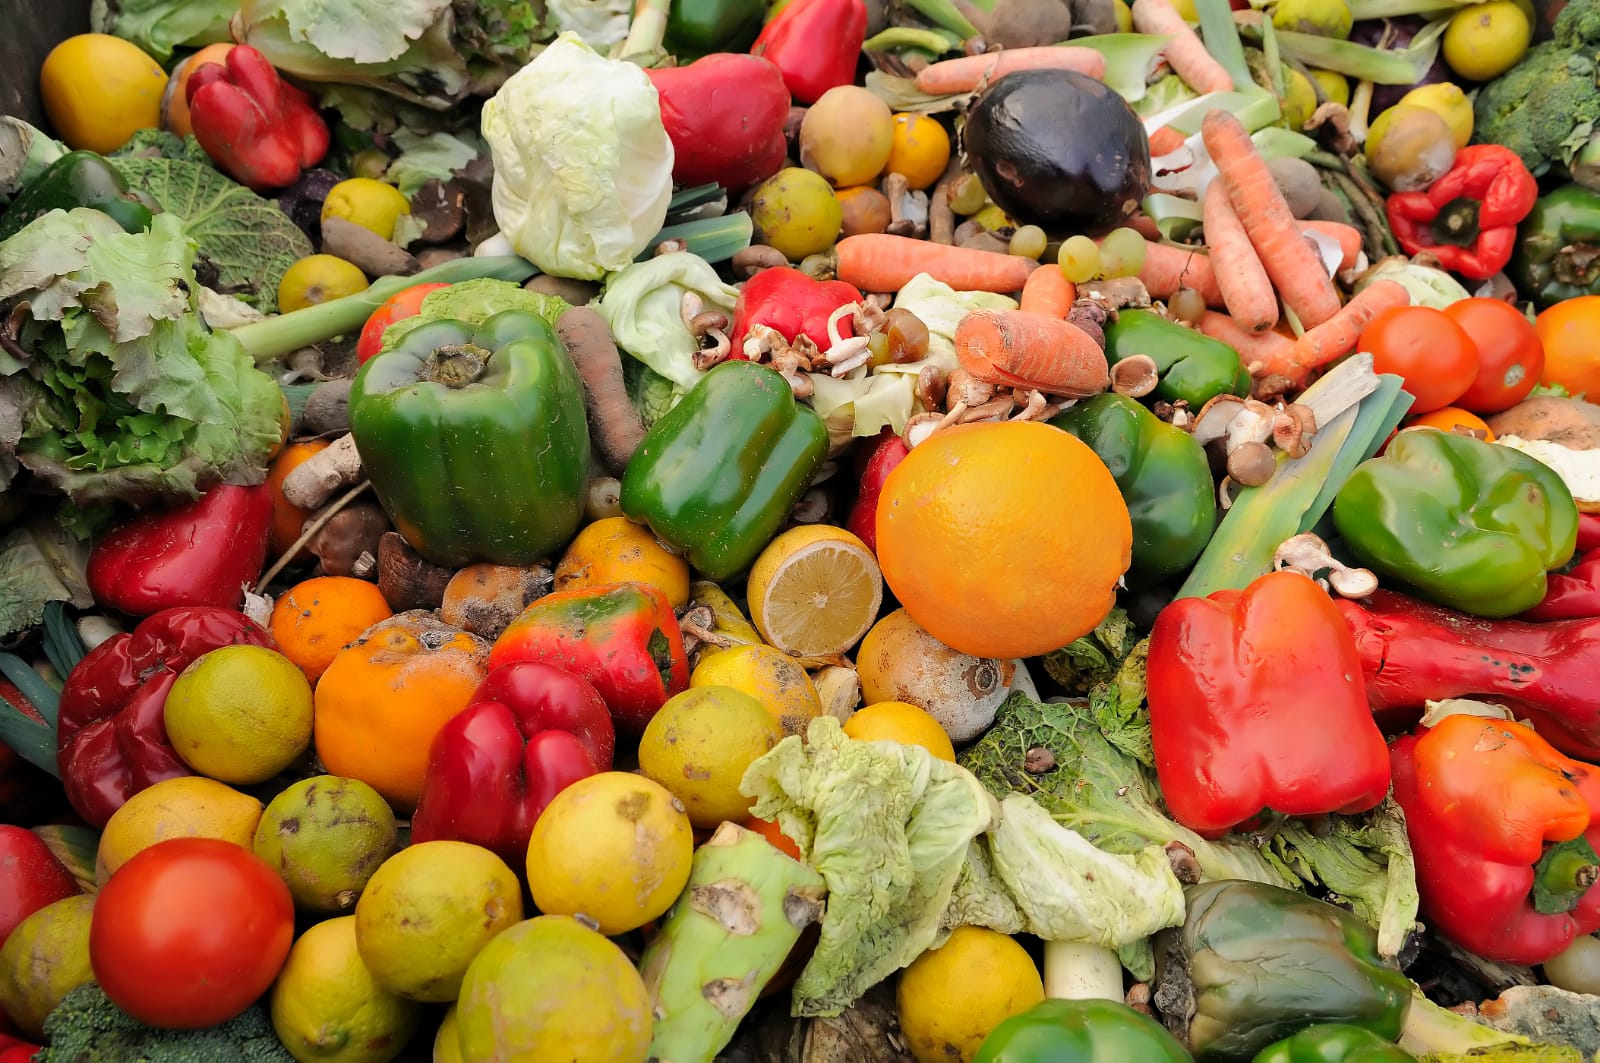 Featured image for “Investigación revela los planes que los fabricantes y minoristas pueden poner en acción para reducir la pérdida de alimentos”